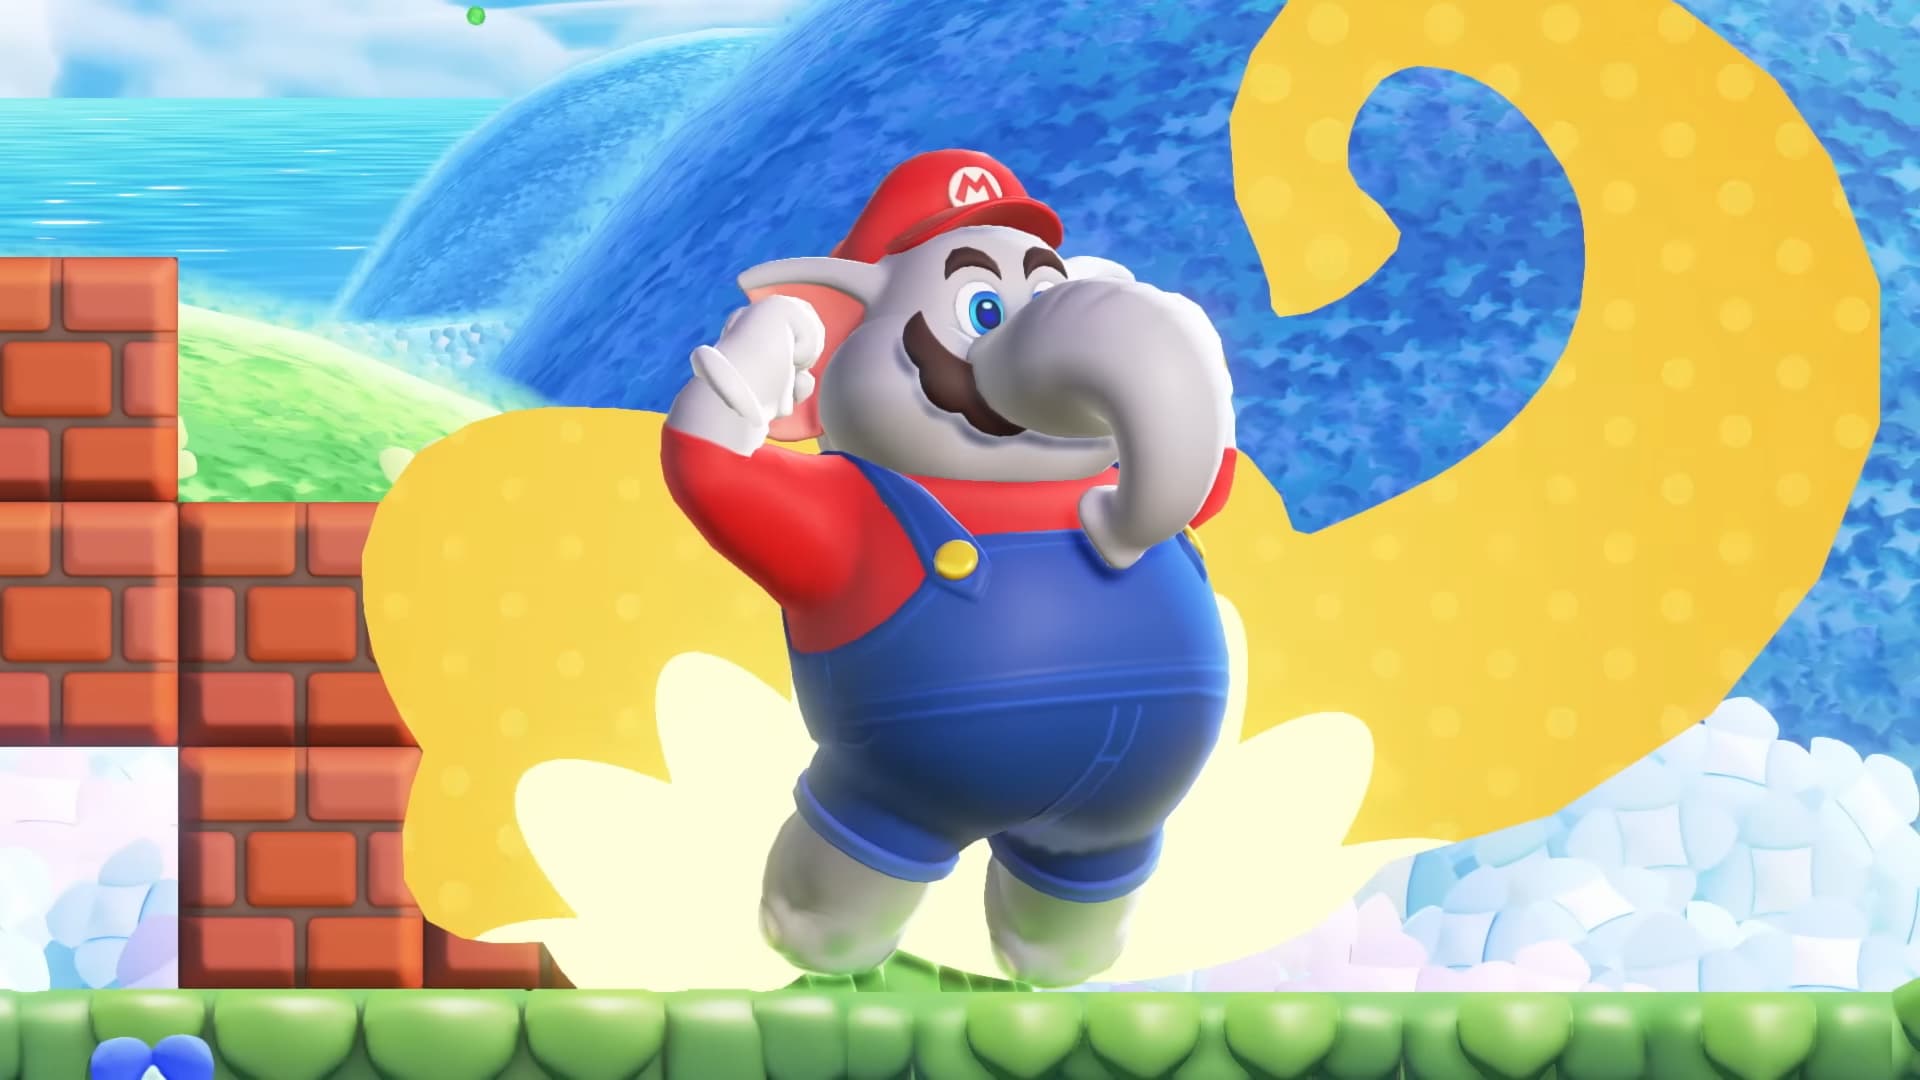 Super Mario Bros. Wonder: veja todos os detalhes apresentados no